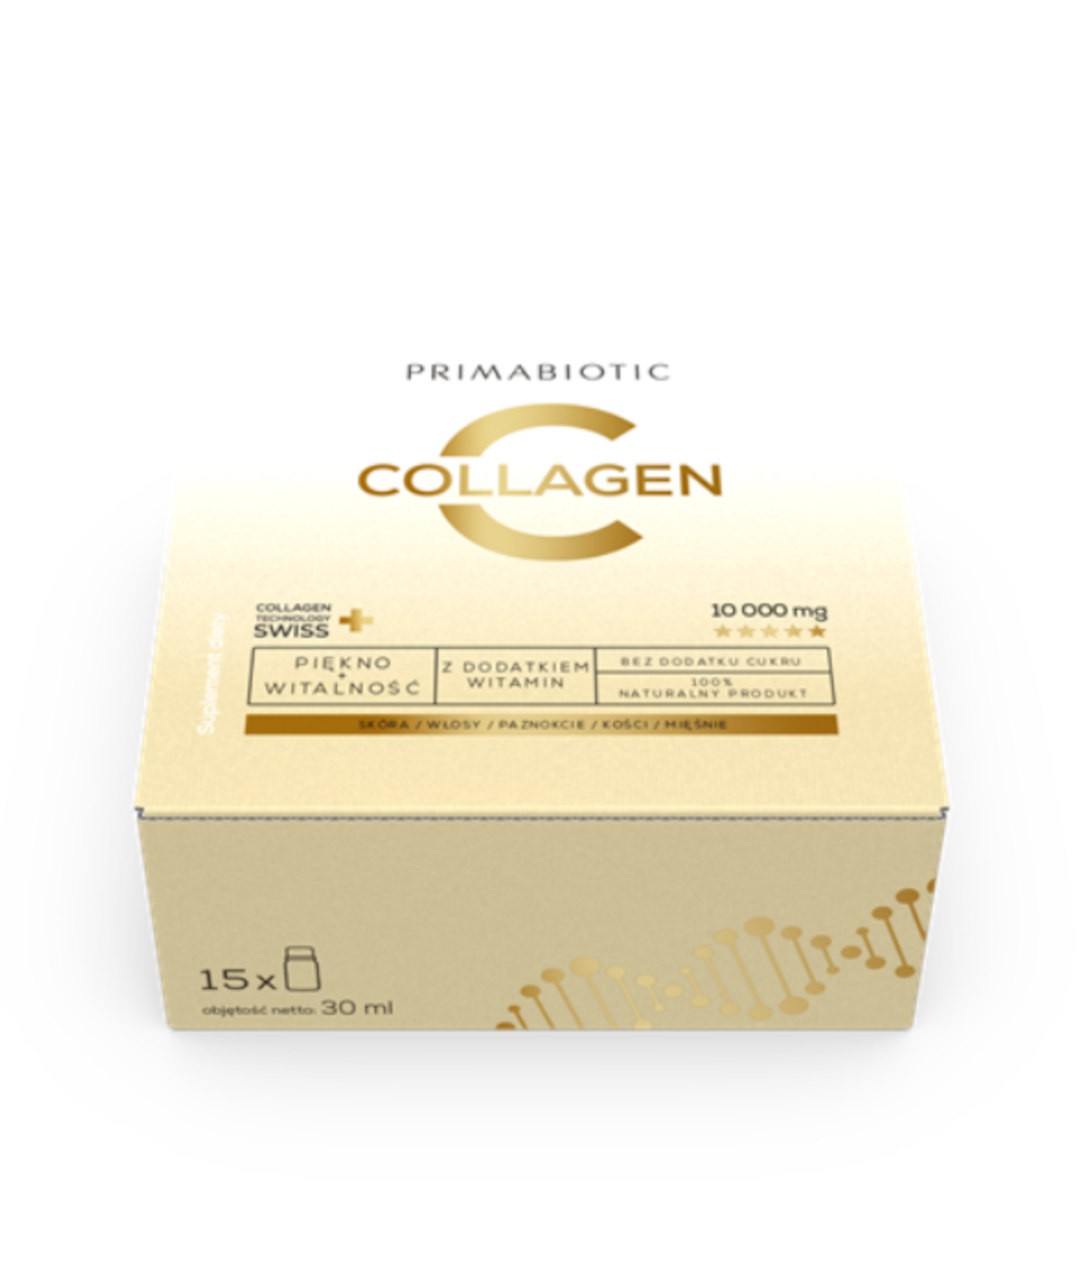 Primabiotic Collagen 30 ml x 15